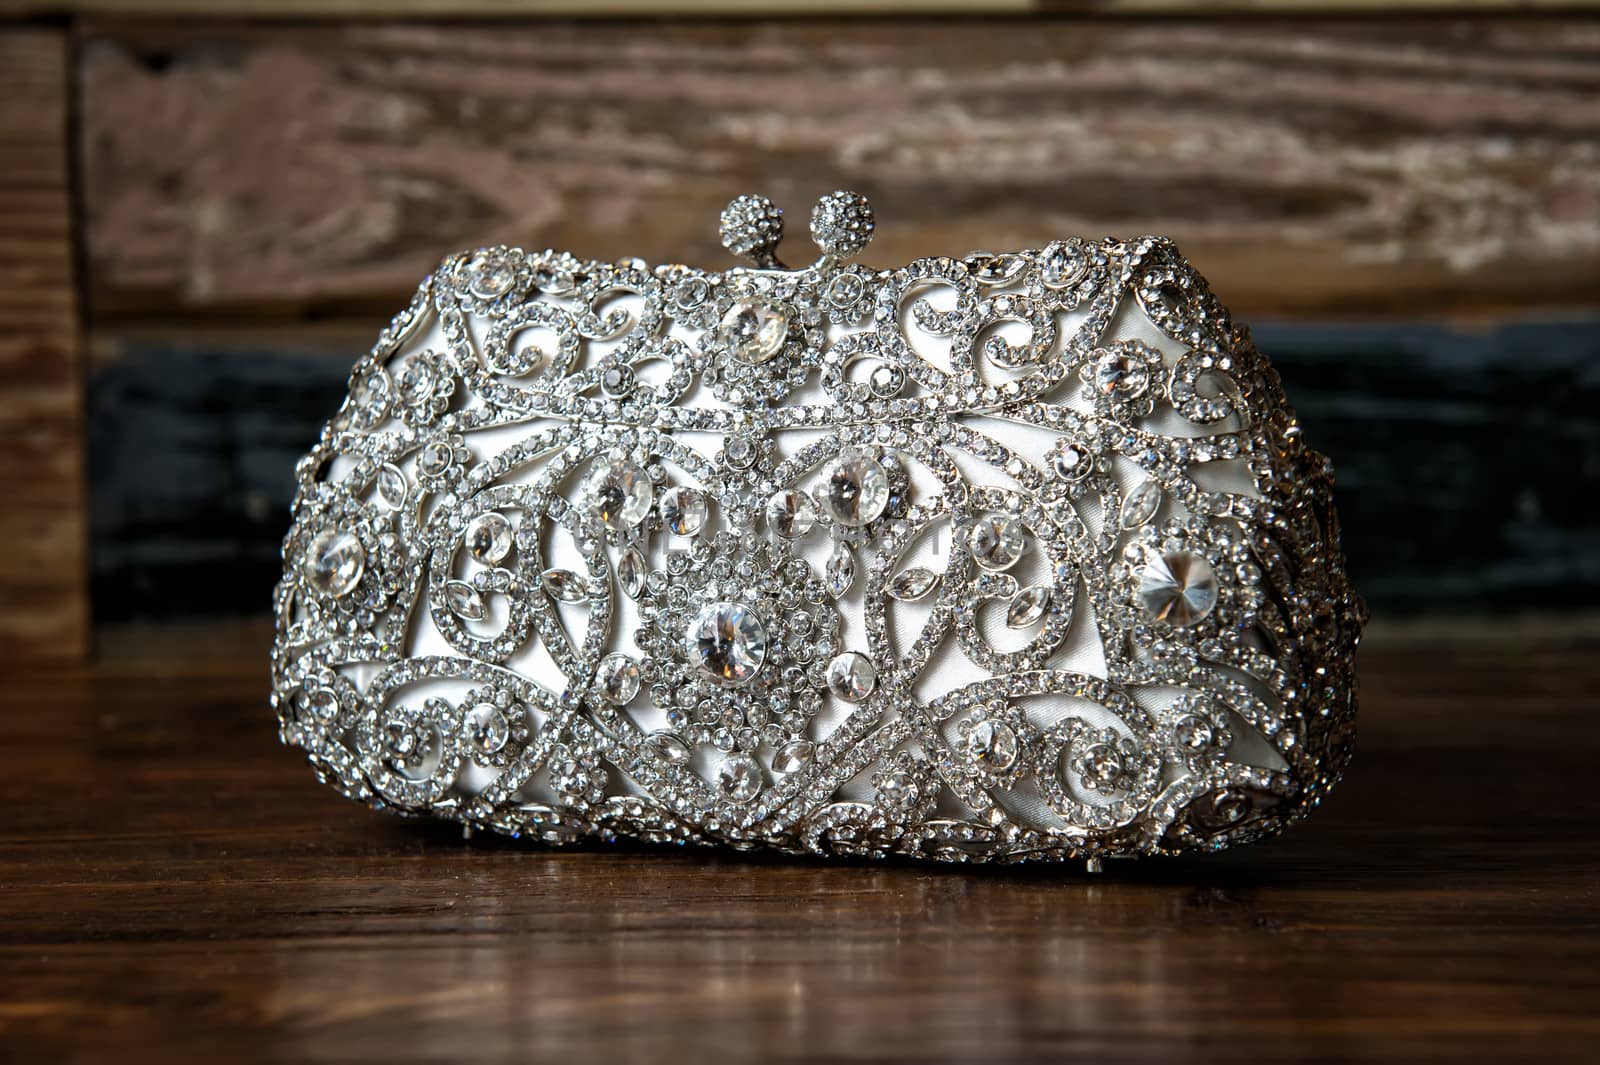 Image of a jeweled clutch /purse